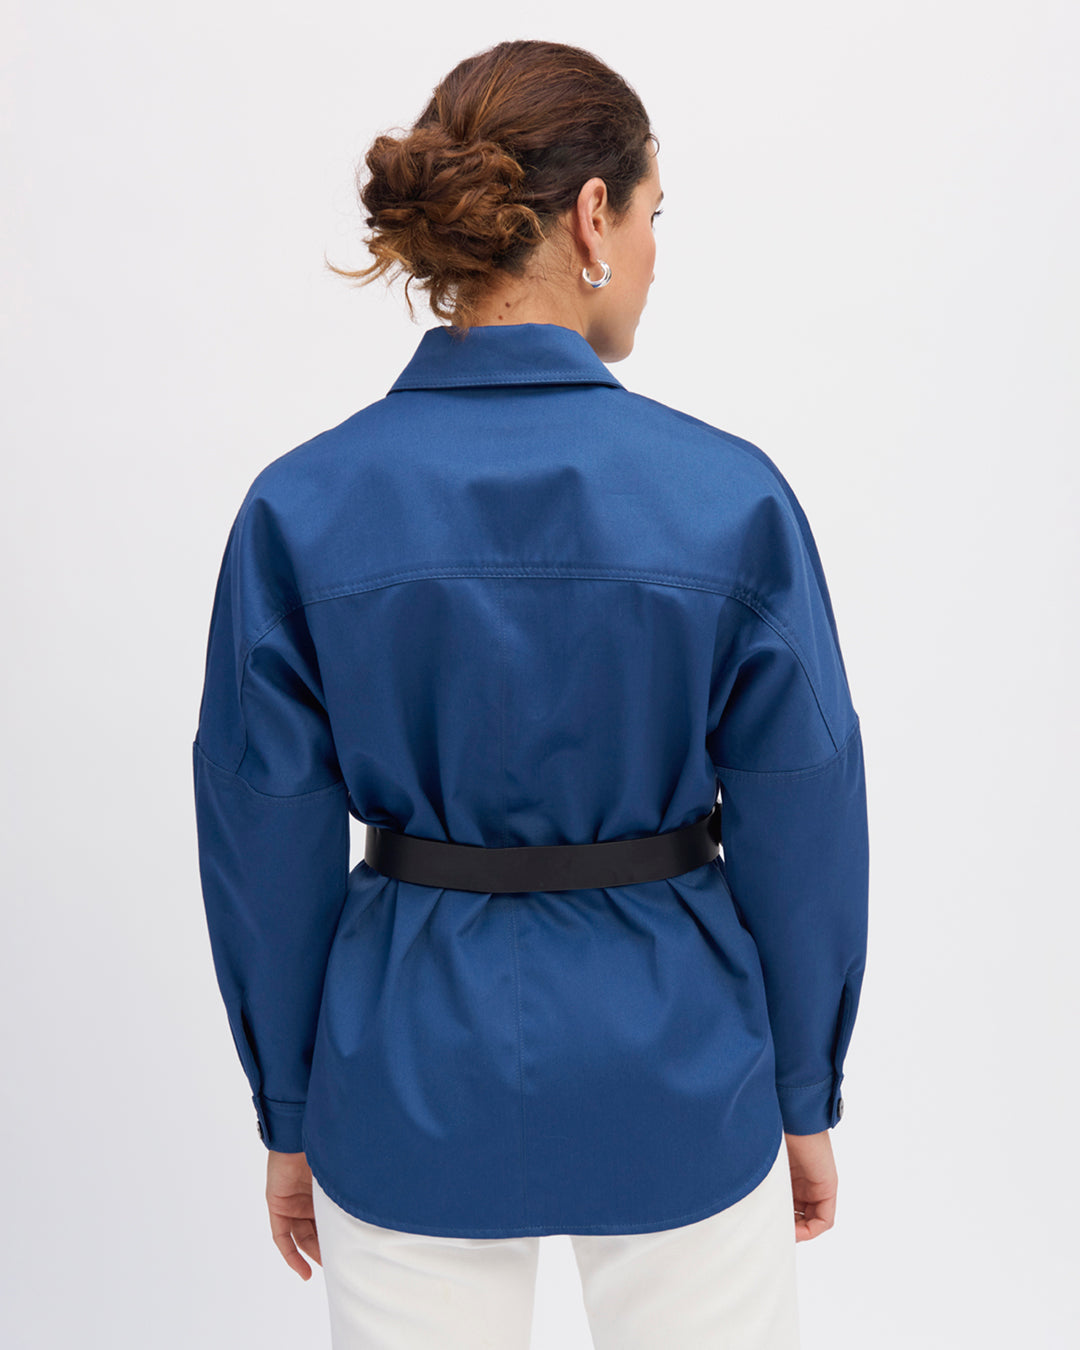 Veste-surchemise-bleue-Col-chemise-Patte-de-boutonnage-Poches-à-rabat-sur-la-poitrine-17H10-tailleurs-pour-femme-Paris-